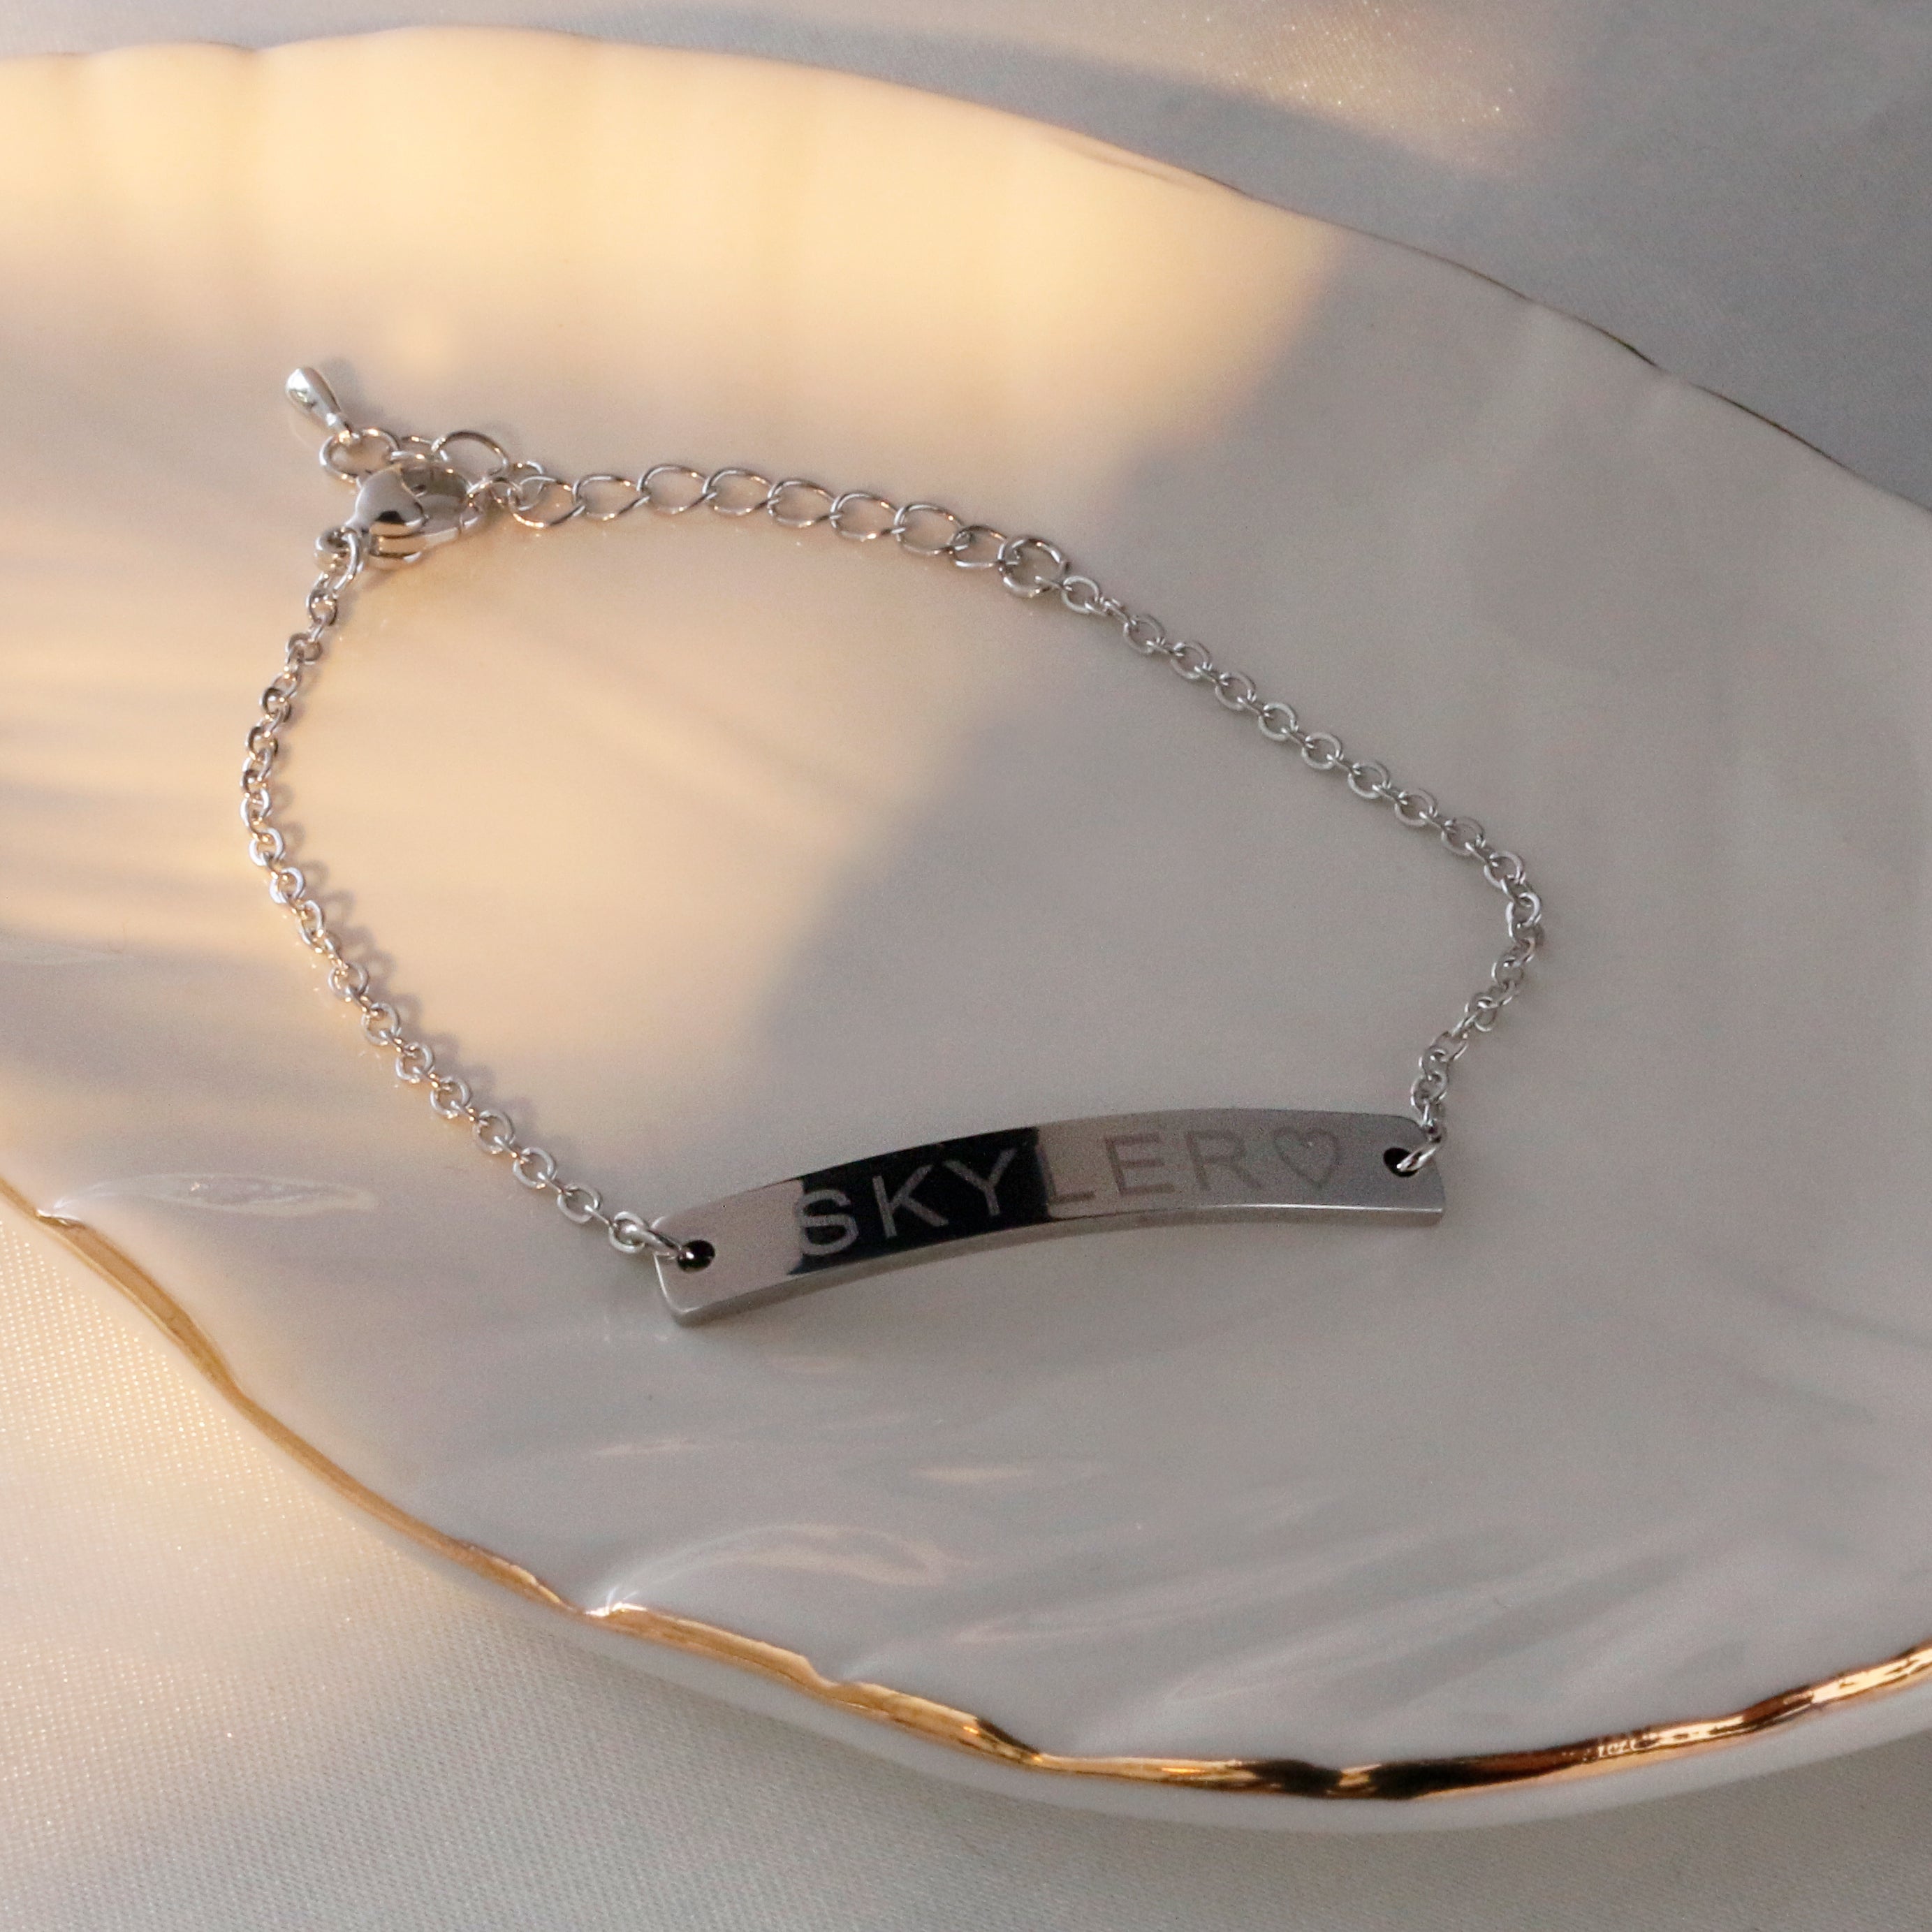 Nameplate Bracelet - Zoe Lev Jewelry